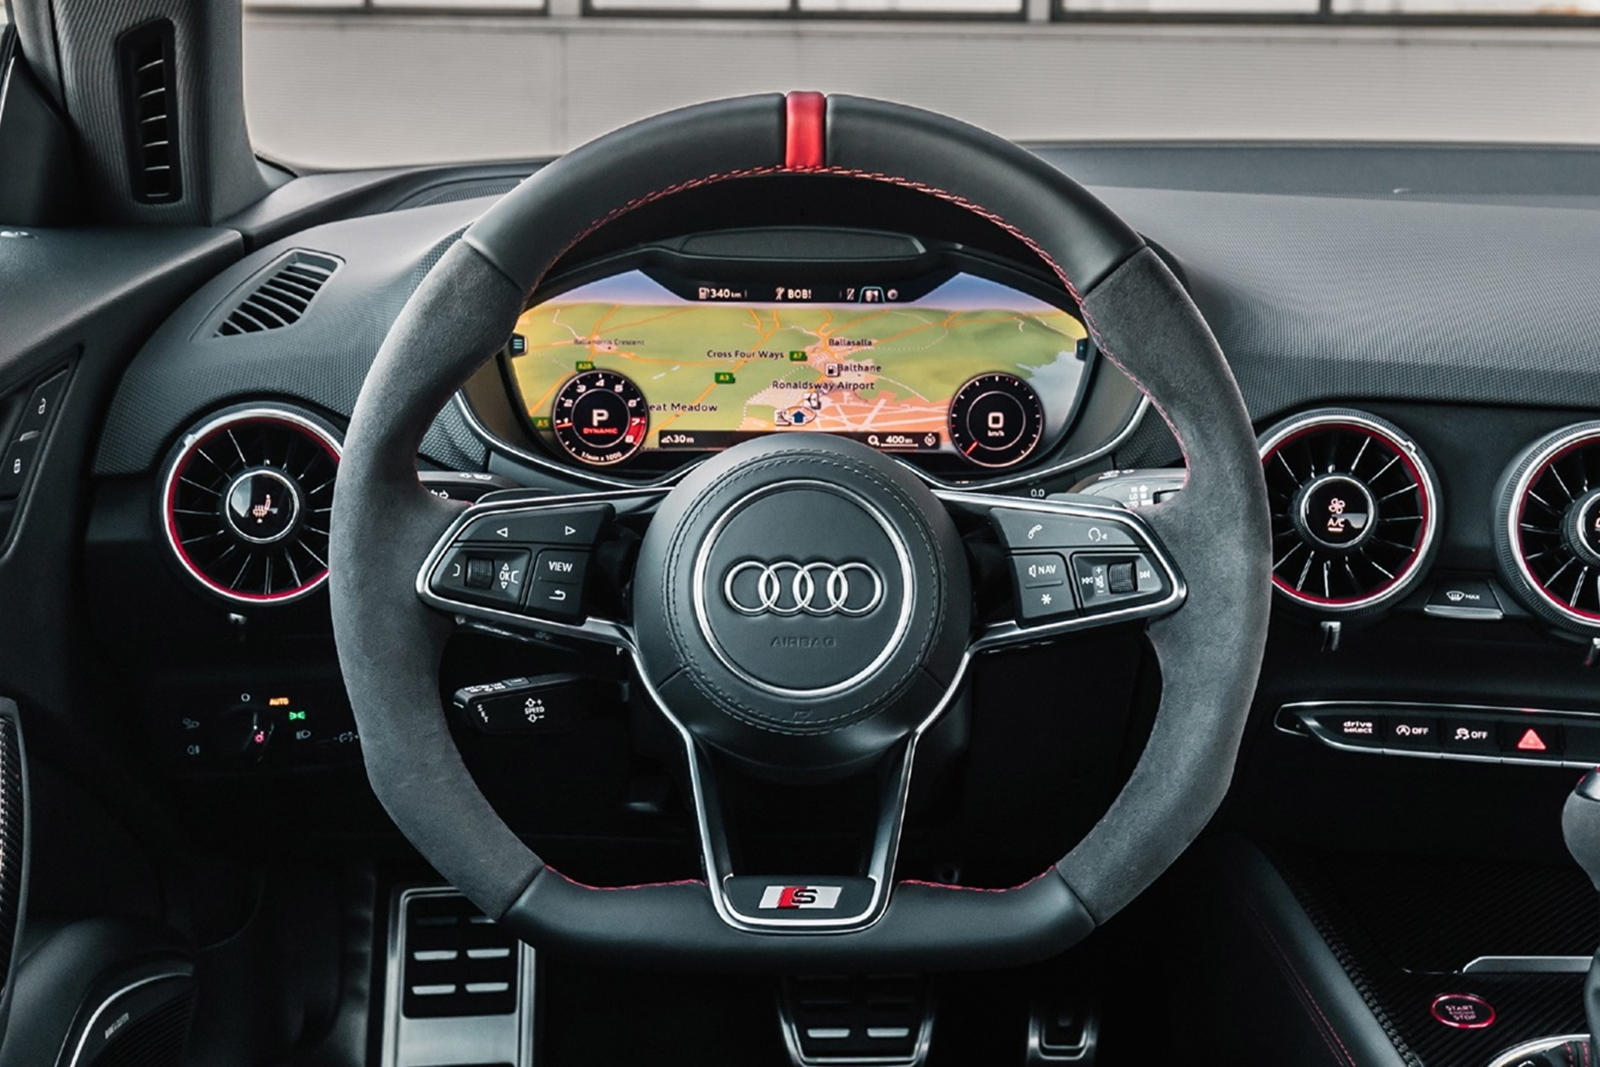 Interior Design of the Audi TT